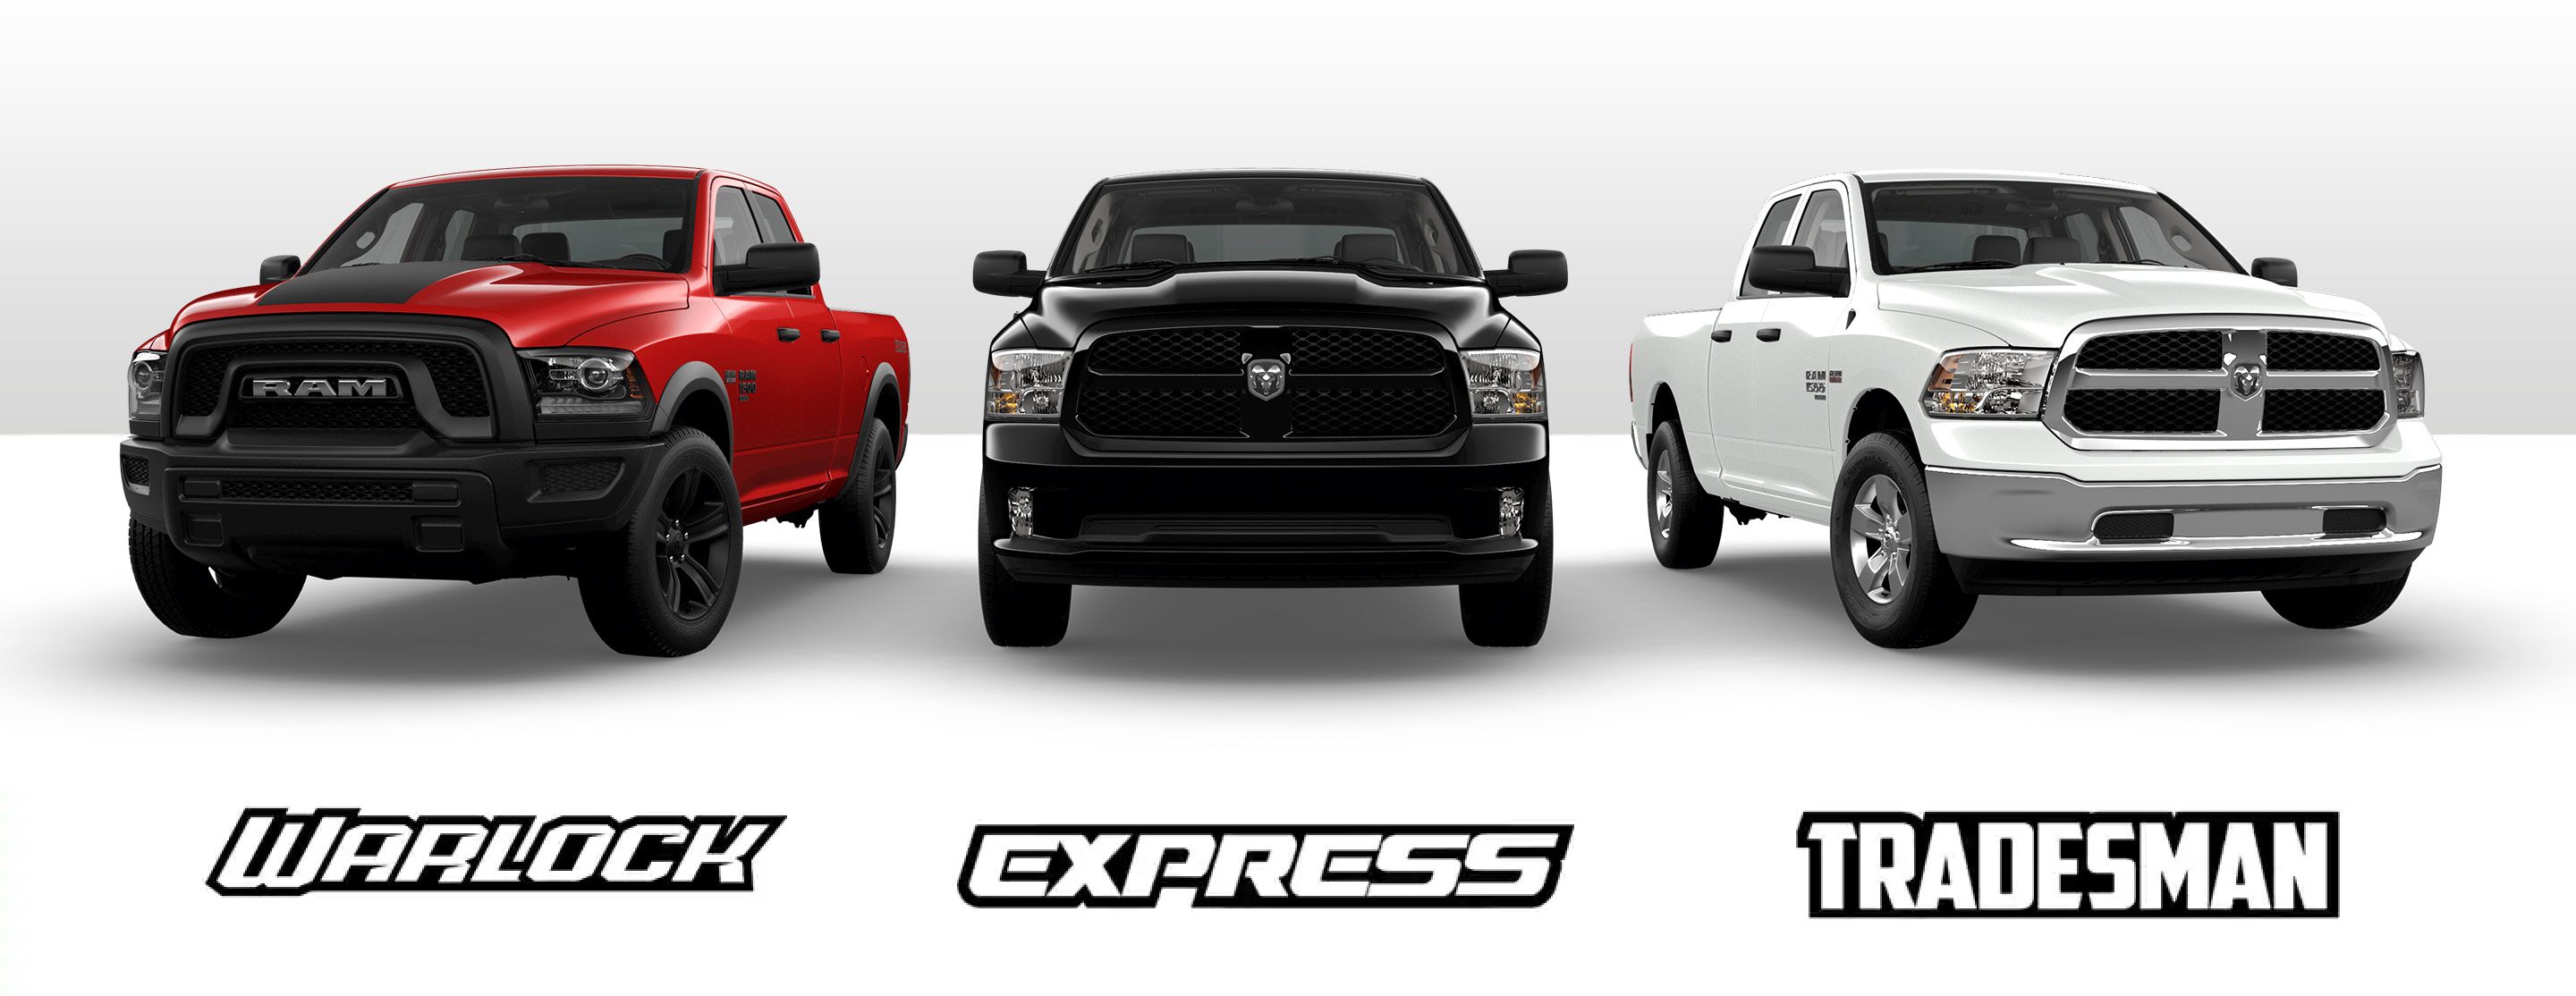 Una imagen deslizante que muestra tres de las versiones de la Ram 1500 Classic 2021: Warlock, Express y Tradesman.